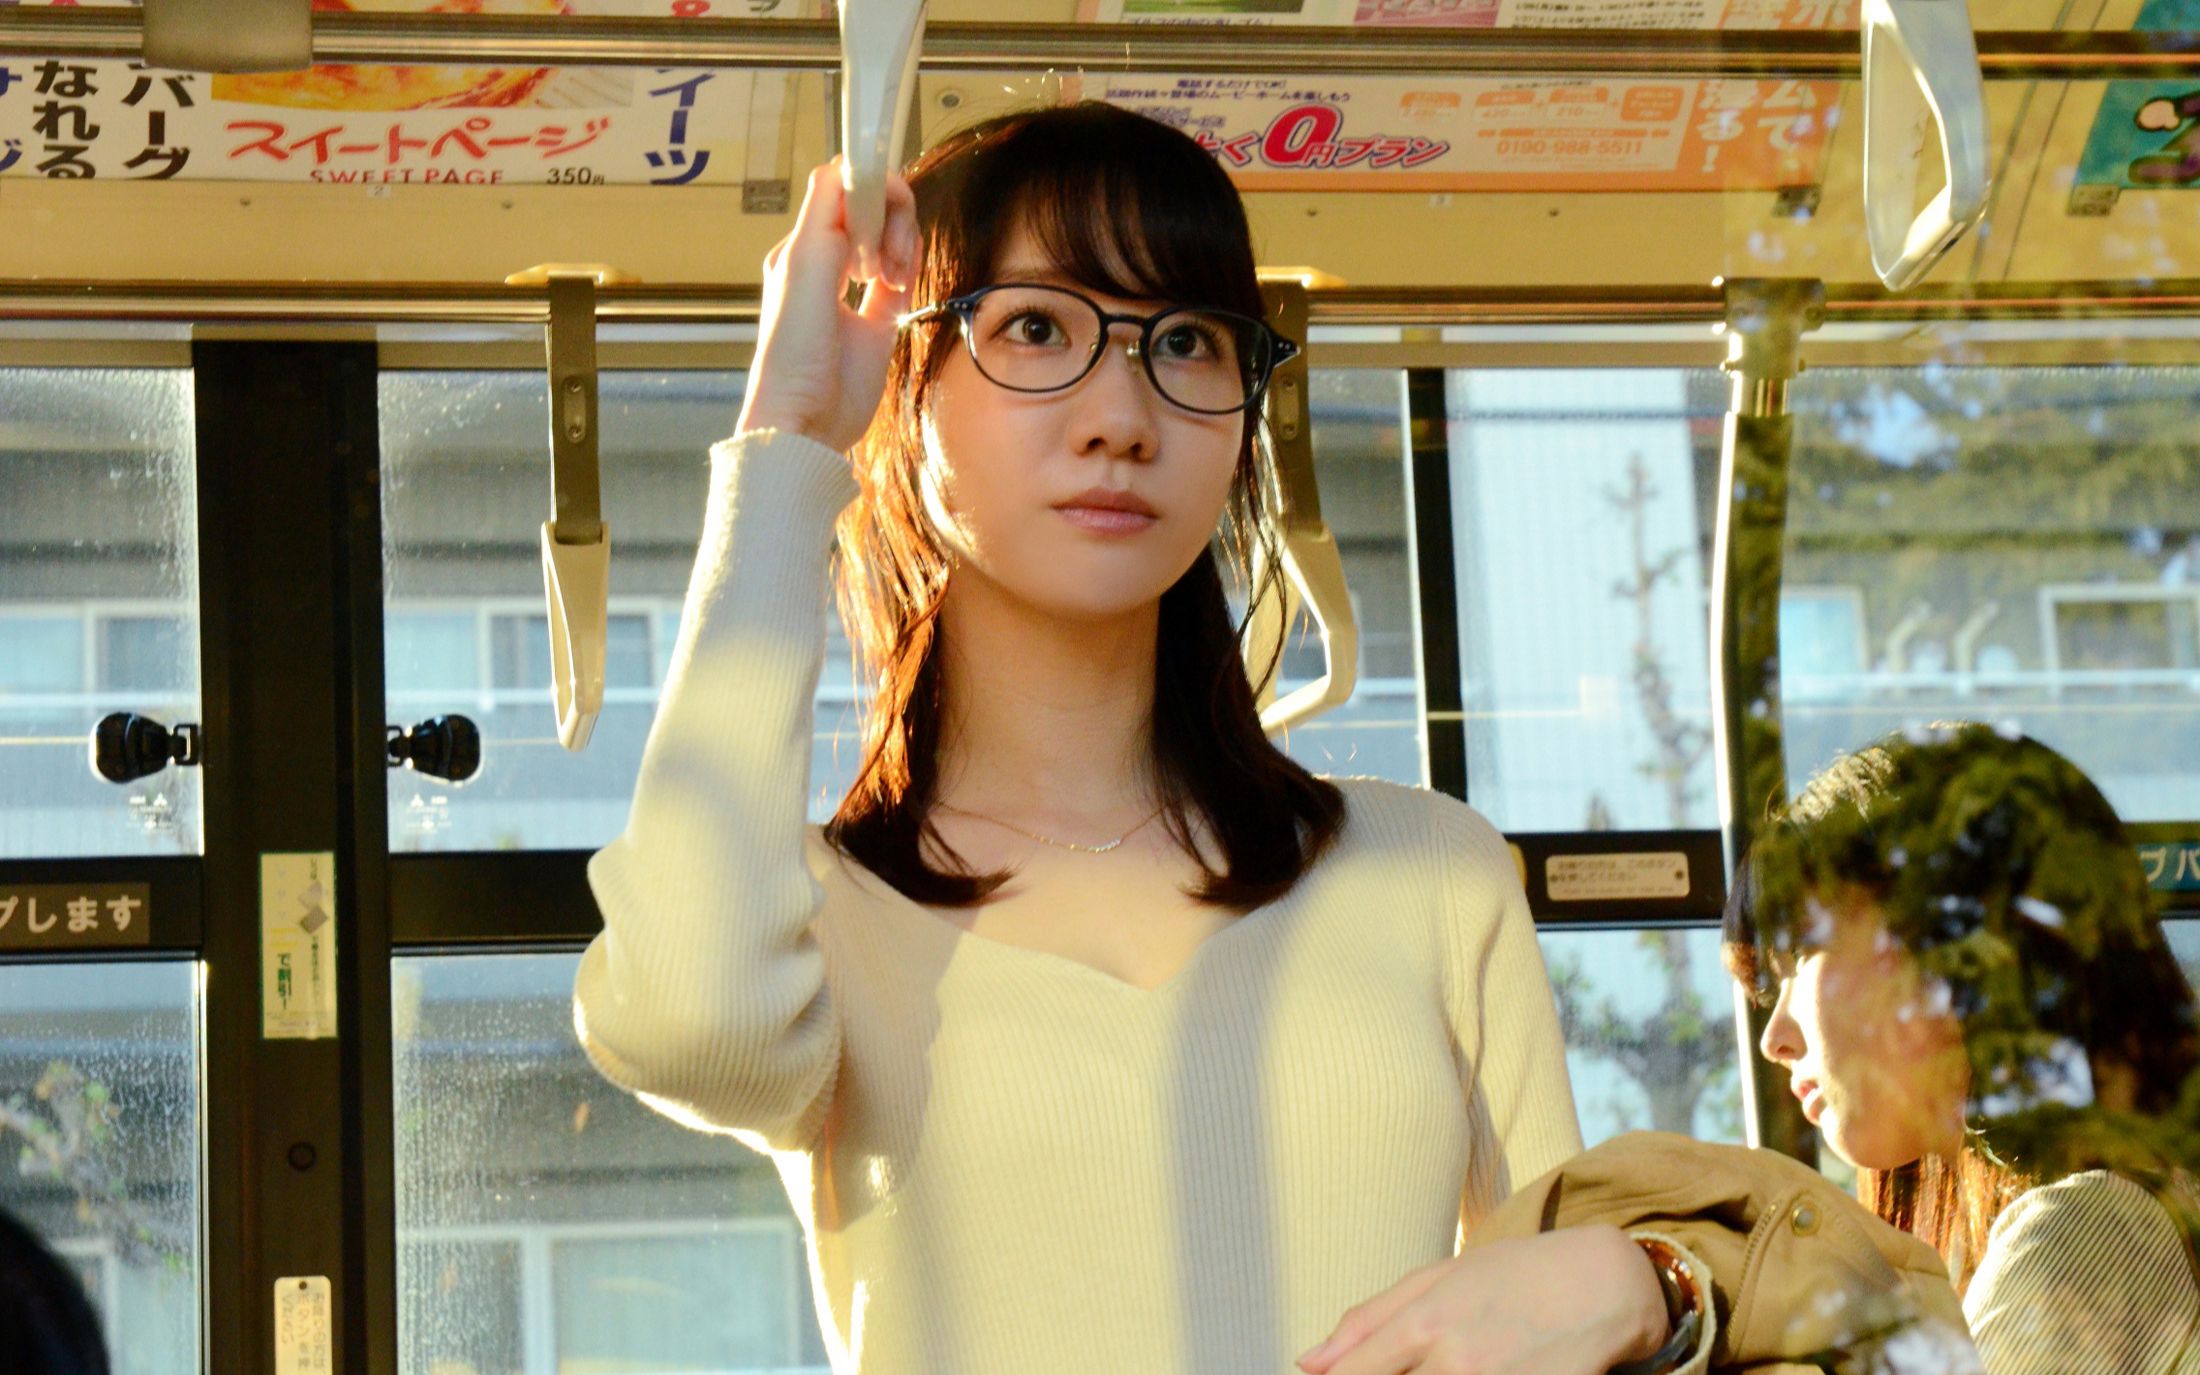 日本的公交车也太拥挤了，这个女孩直接带球撞人